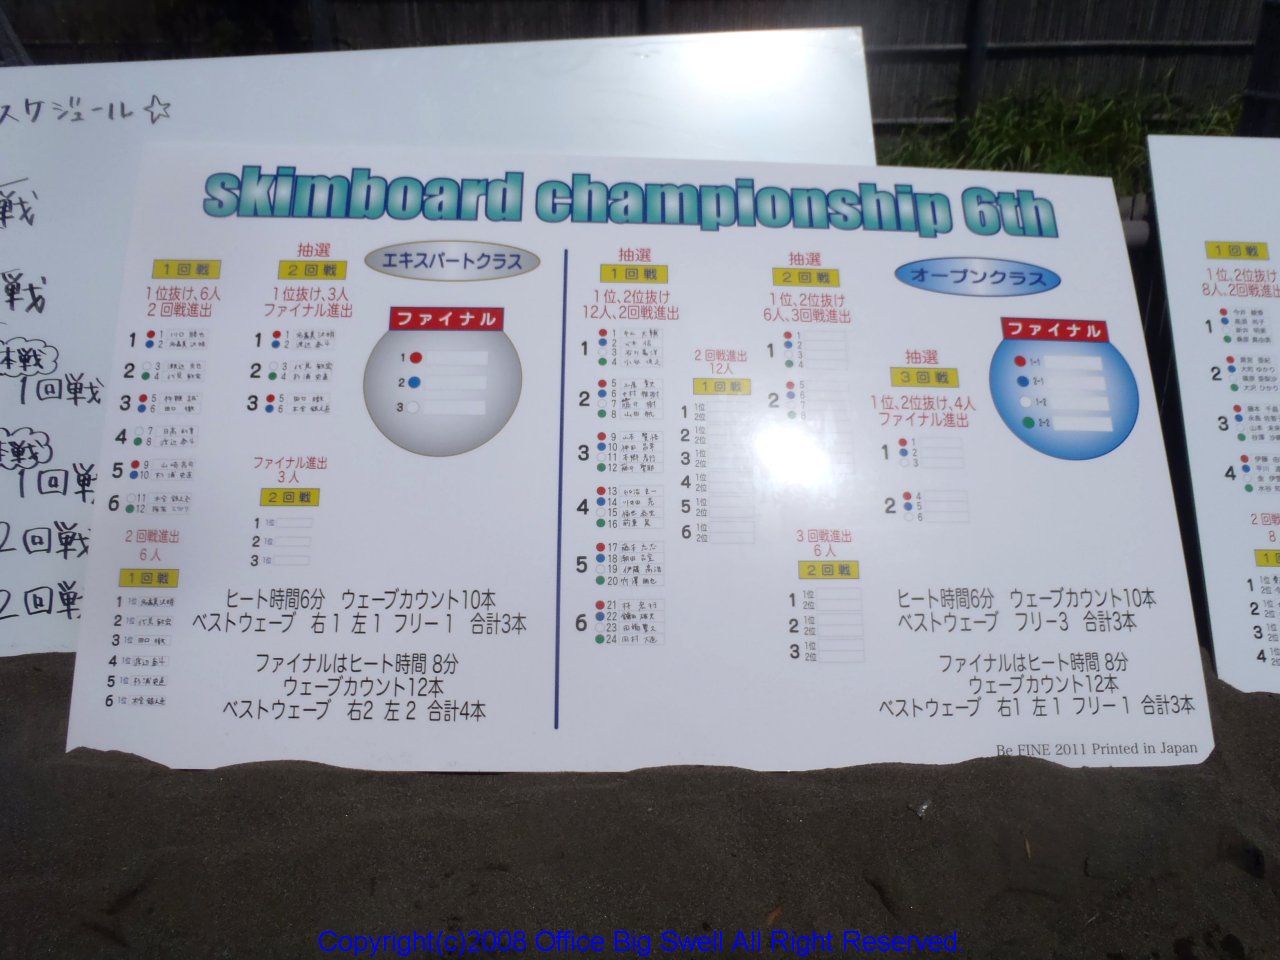 2011championship6th 001